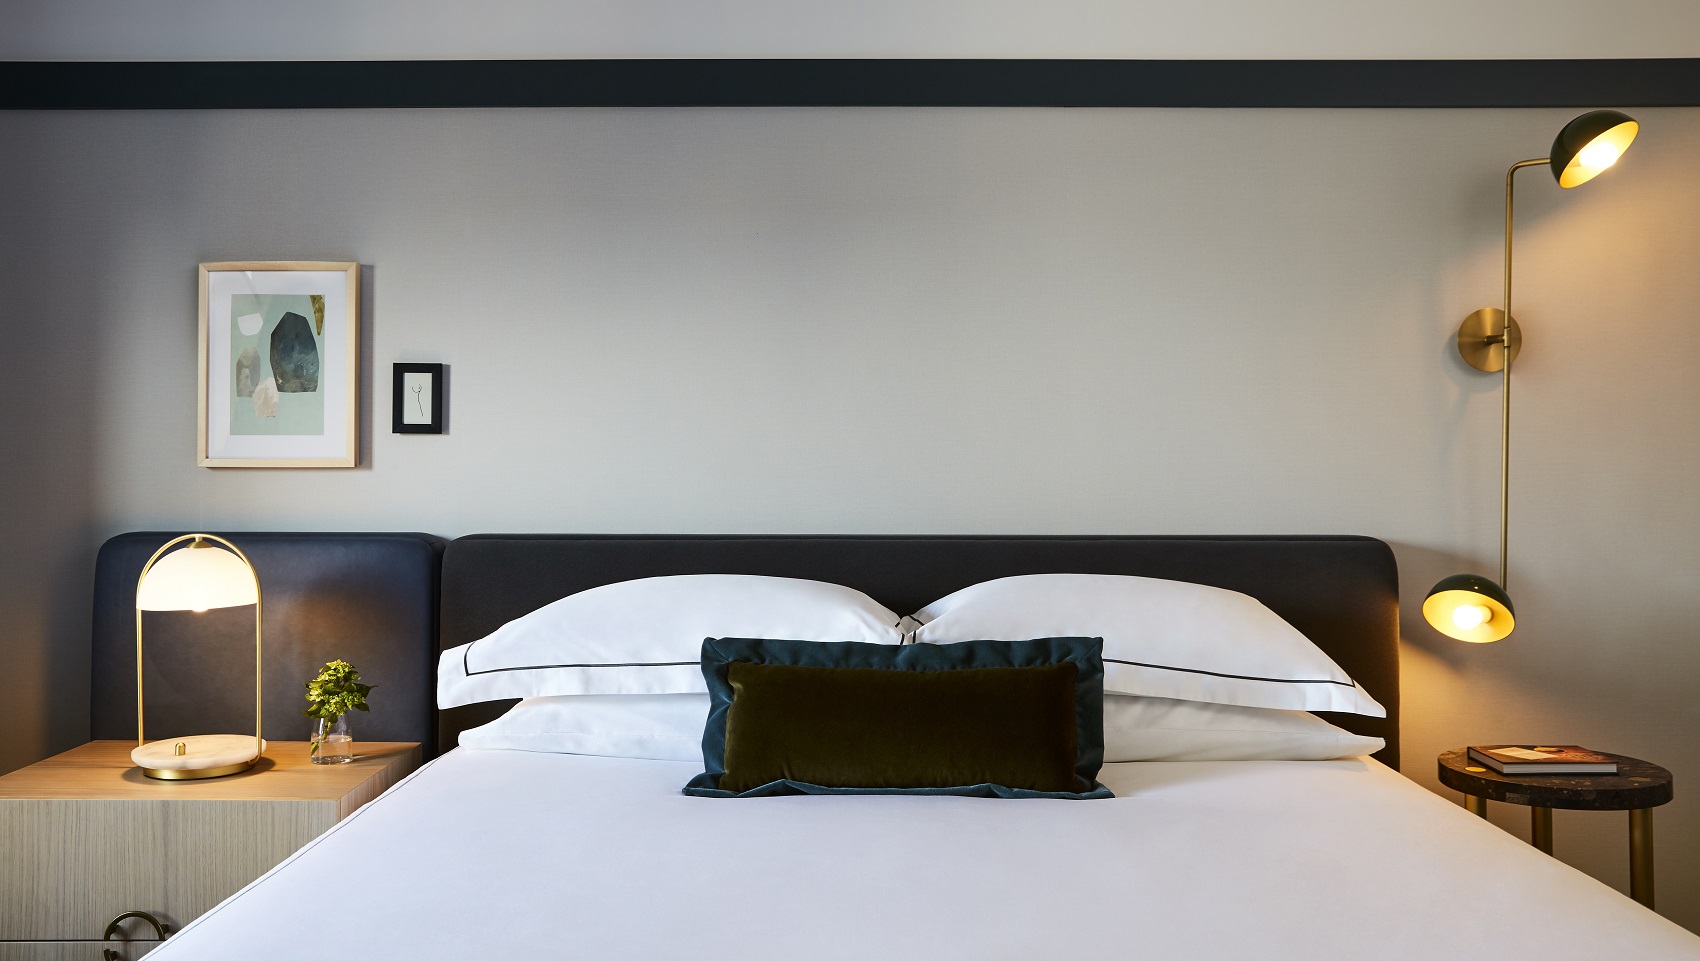 Bedroom, Art, green velvet pillow, black headboard, White Frette Sheets